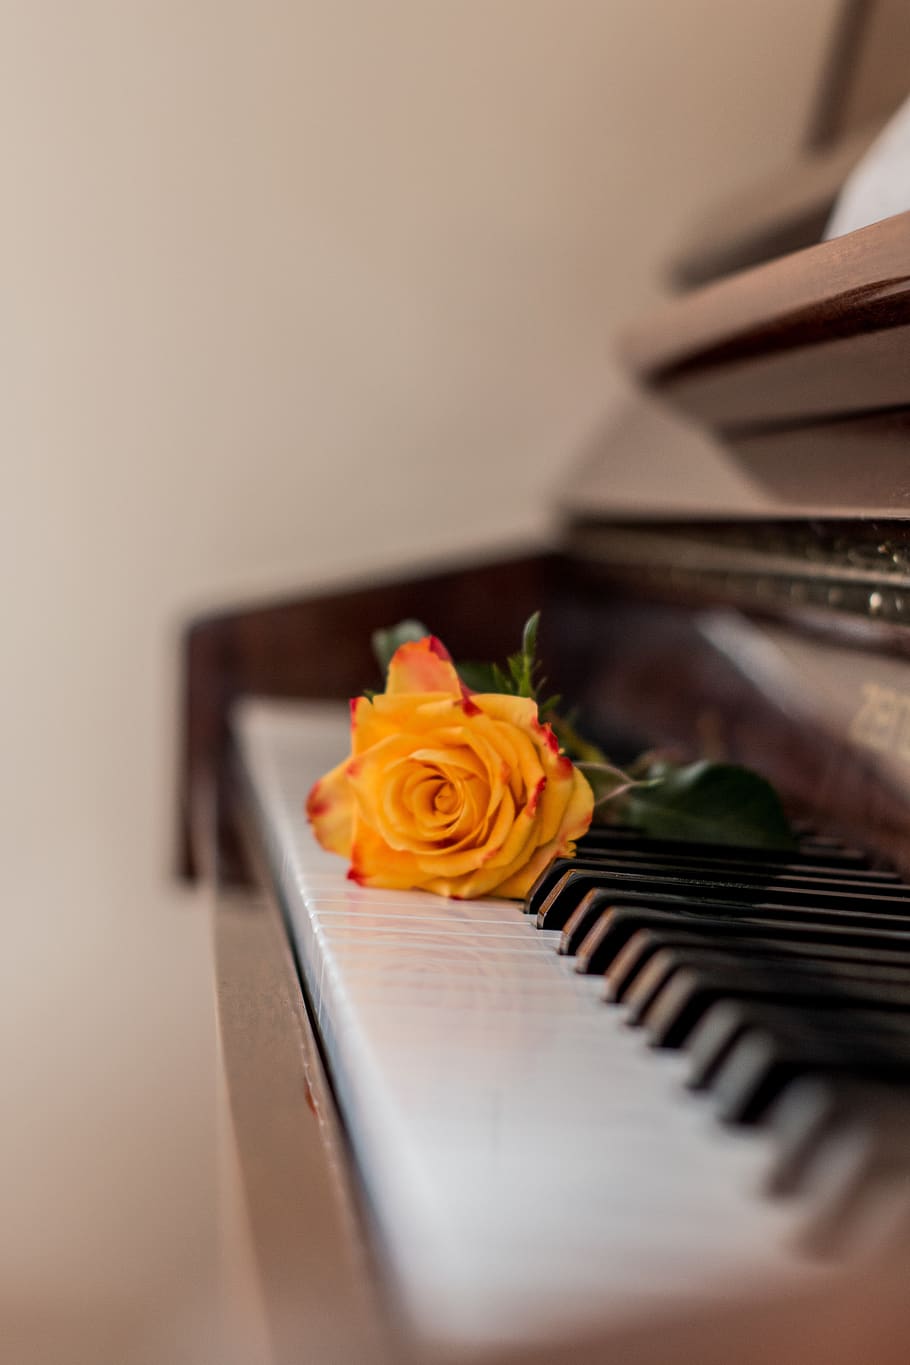 piano, música, rosa, teclas de piano, instrumento musical, papel de parede do telefone, flor, planta de florescência, rosa - flor, foco seletivo